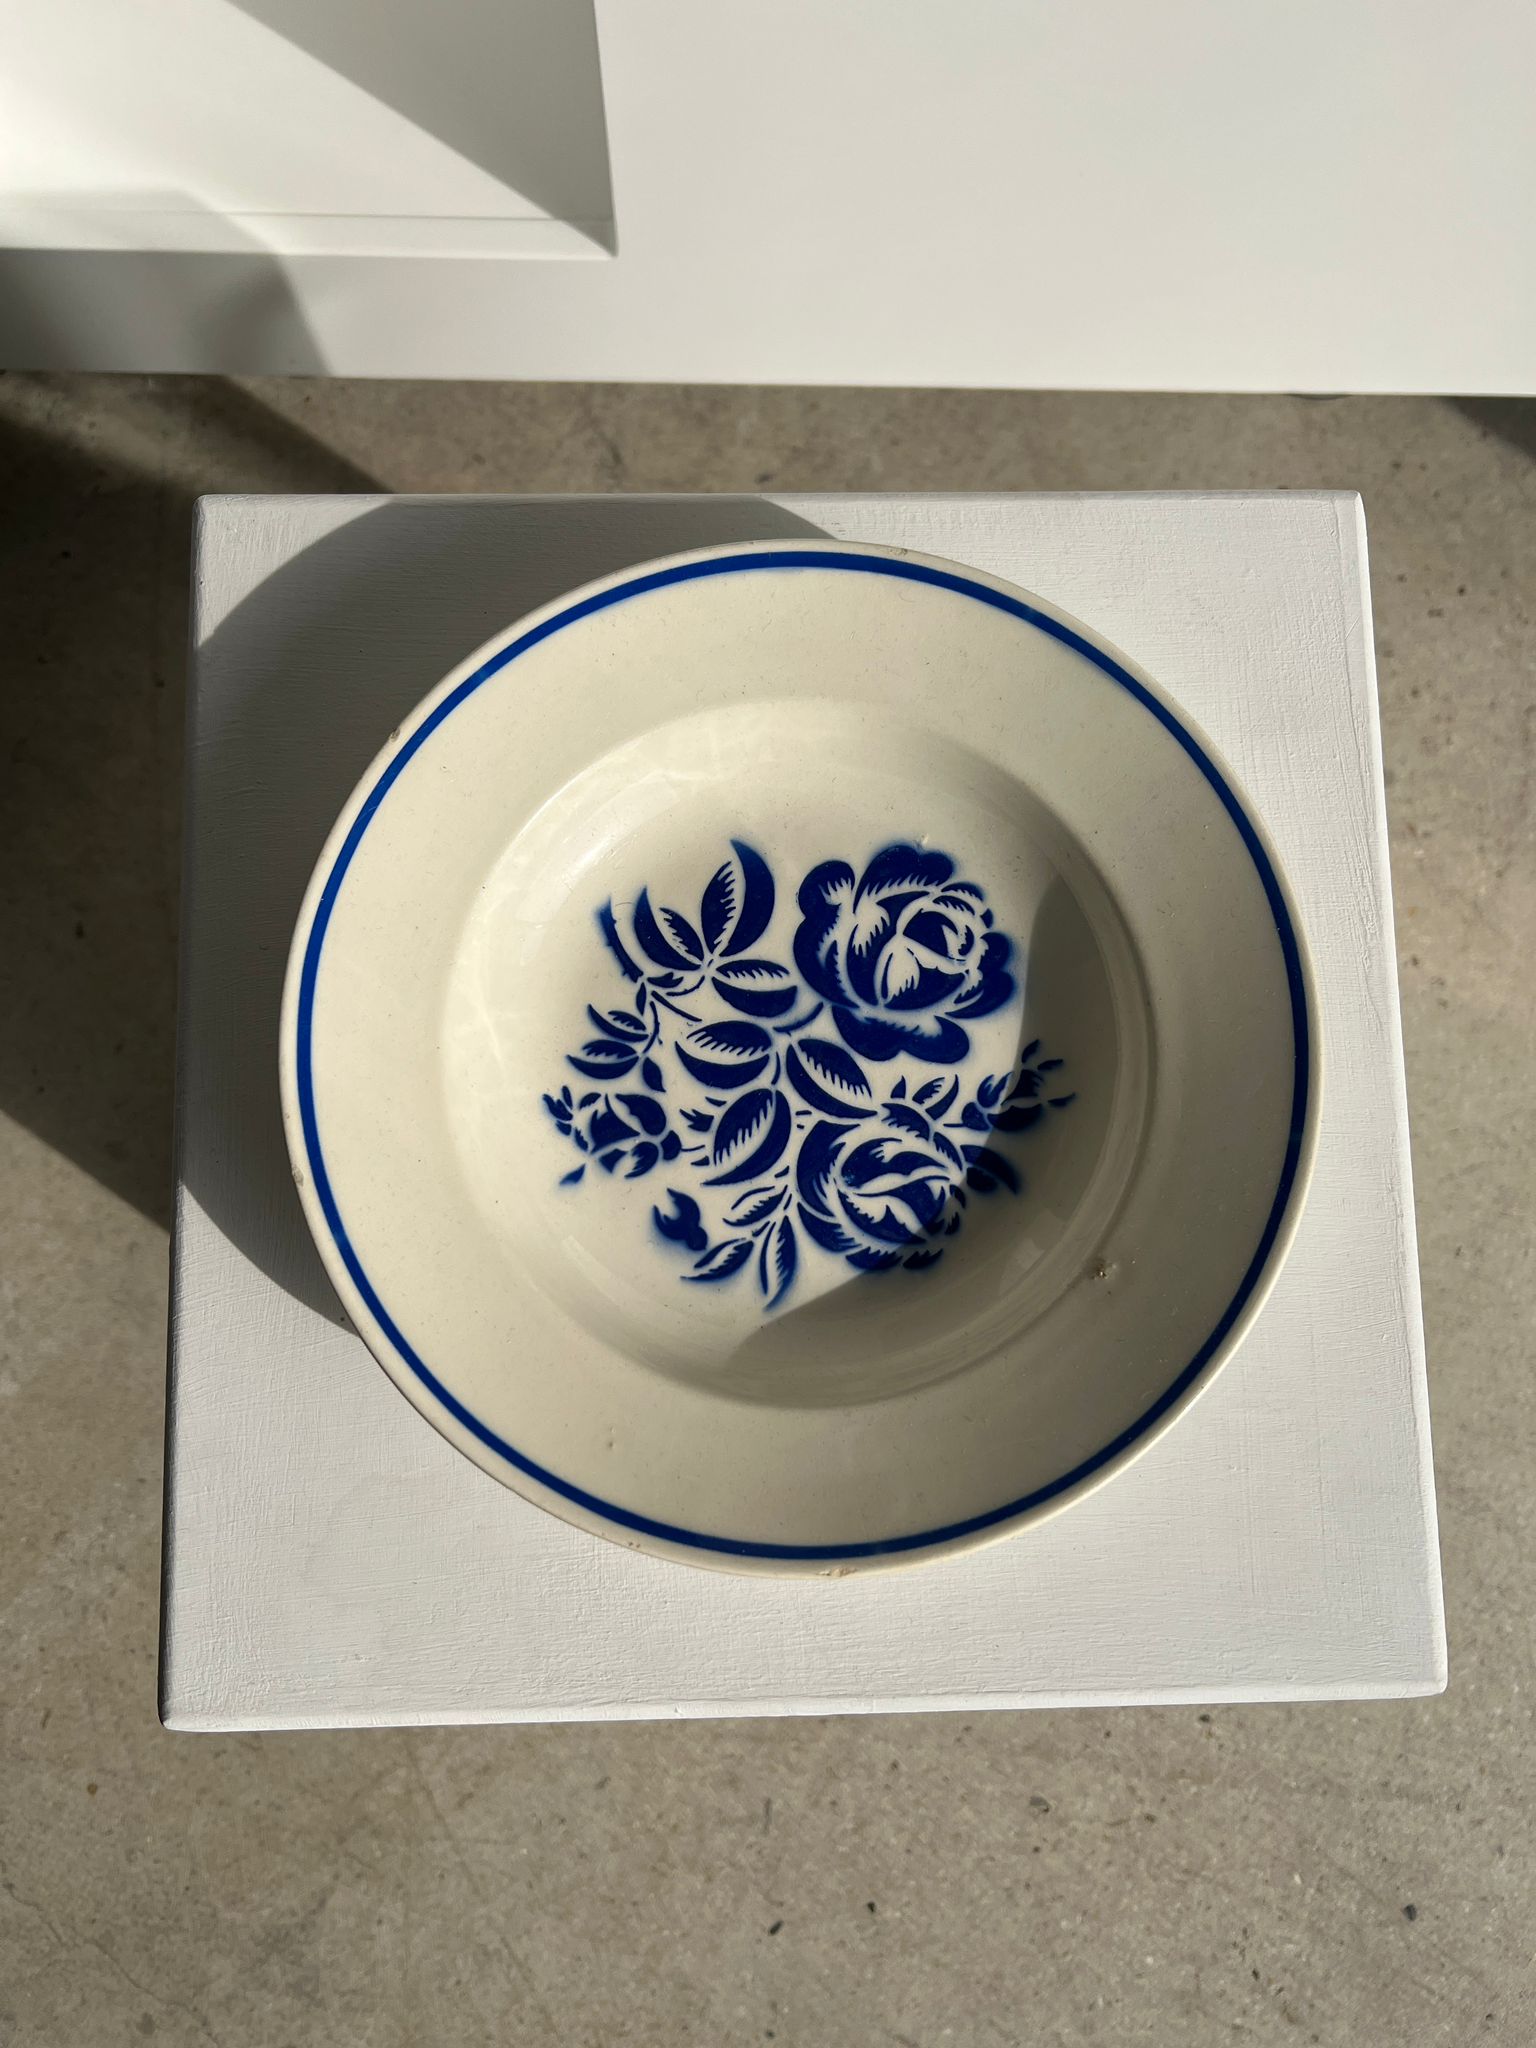 Petite assiette creuse Nadia Lunéville décor floral stylisé bleu